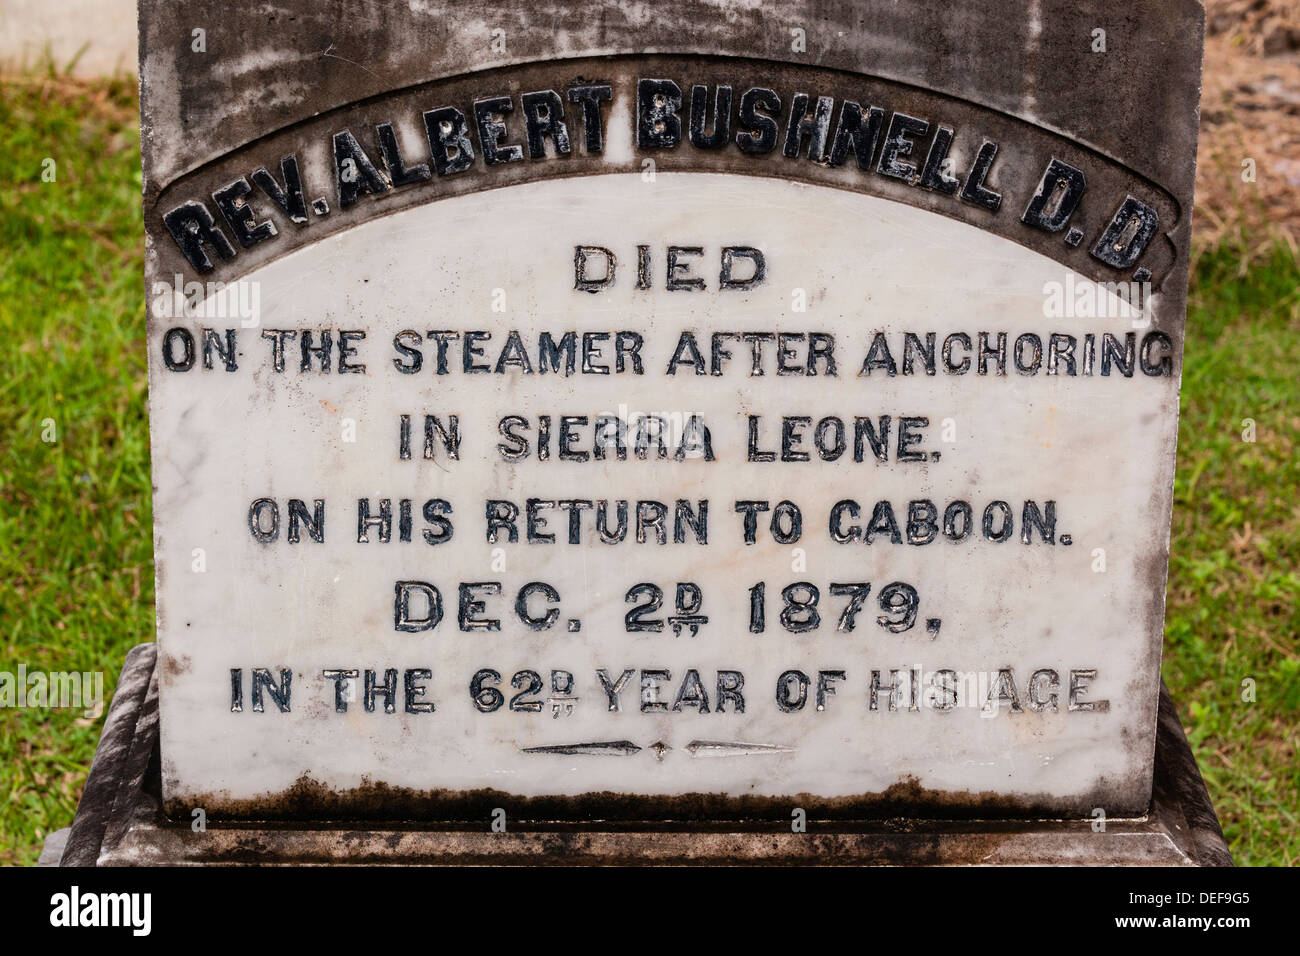 L'Afrique, GABON, Libreville. Pierre tombale pour le Révérend Albert Bushnell, un Américain qui est mort à bord d'un navire à vapeur en Sierra Leone. Banque D'Images